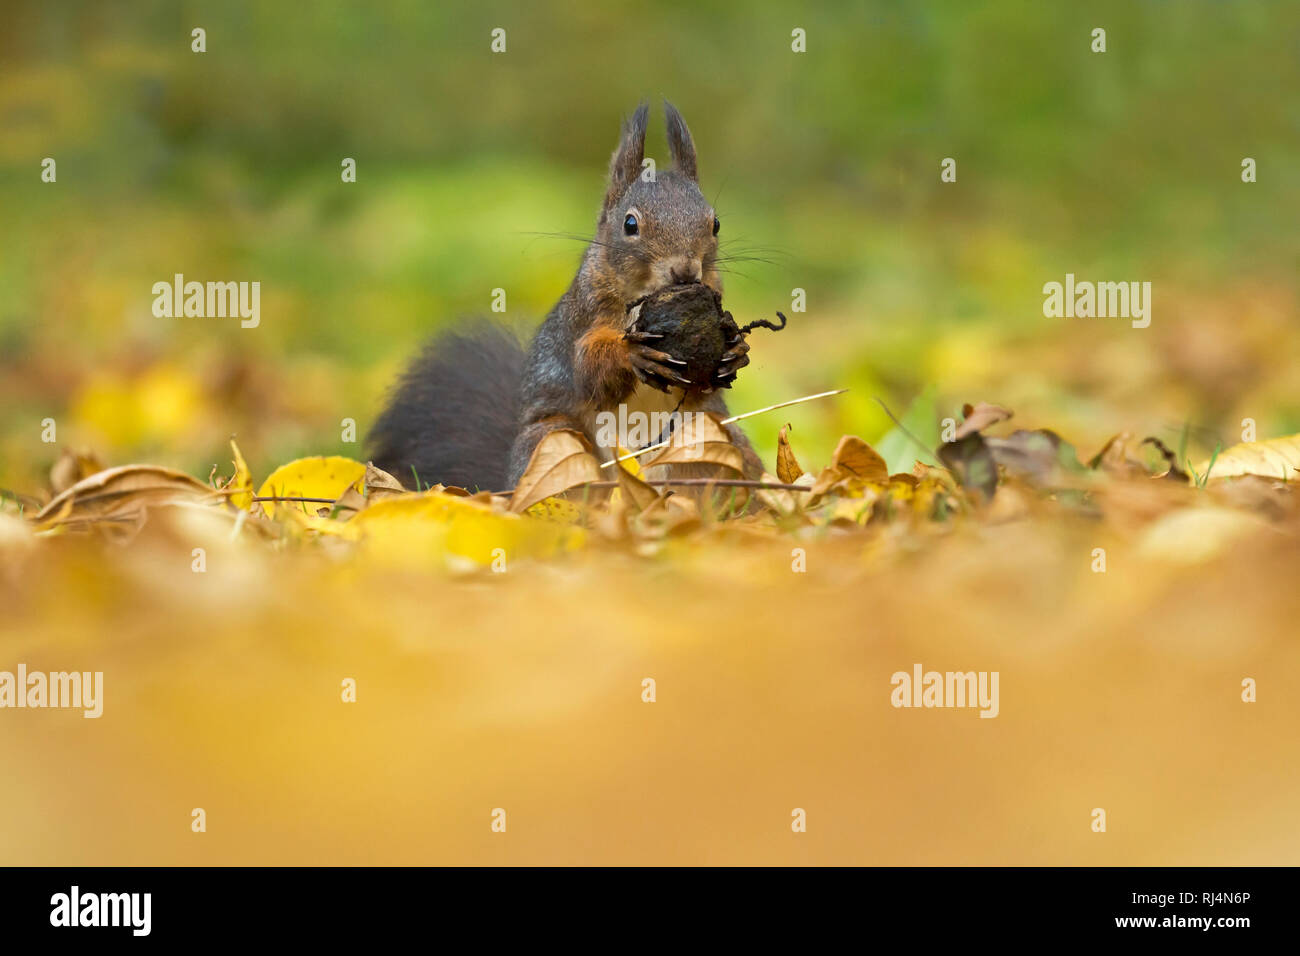 Eichhörnchen, Sciurus vulgaris, wildlife, Deutschland Stock Photo